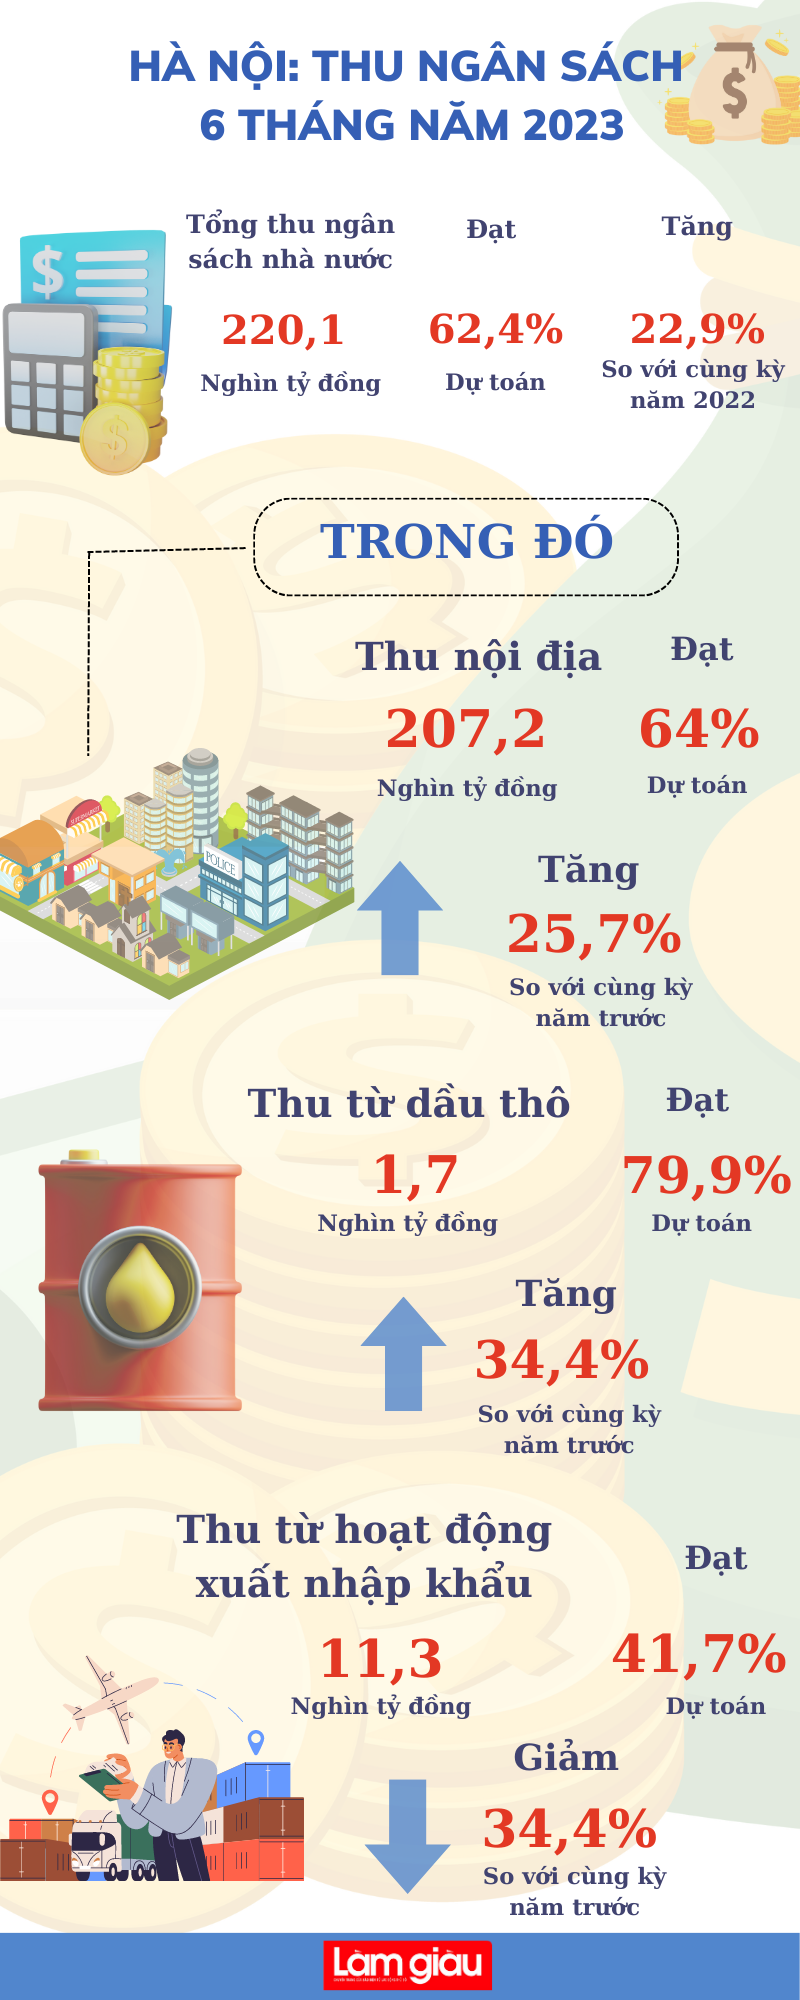 Hà Nội: Thu ngân sách 6 tháng năm 2023 tăng 22,9% so với cùng kỳ năm 2022